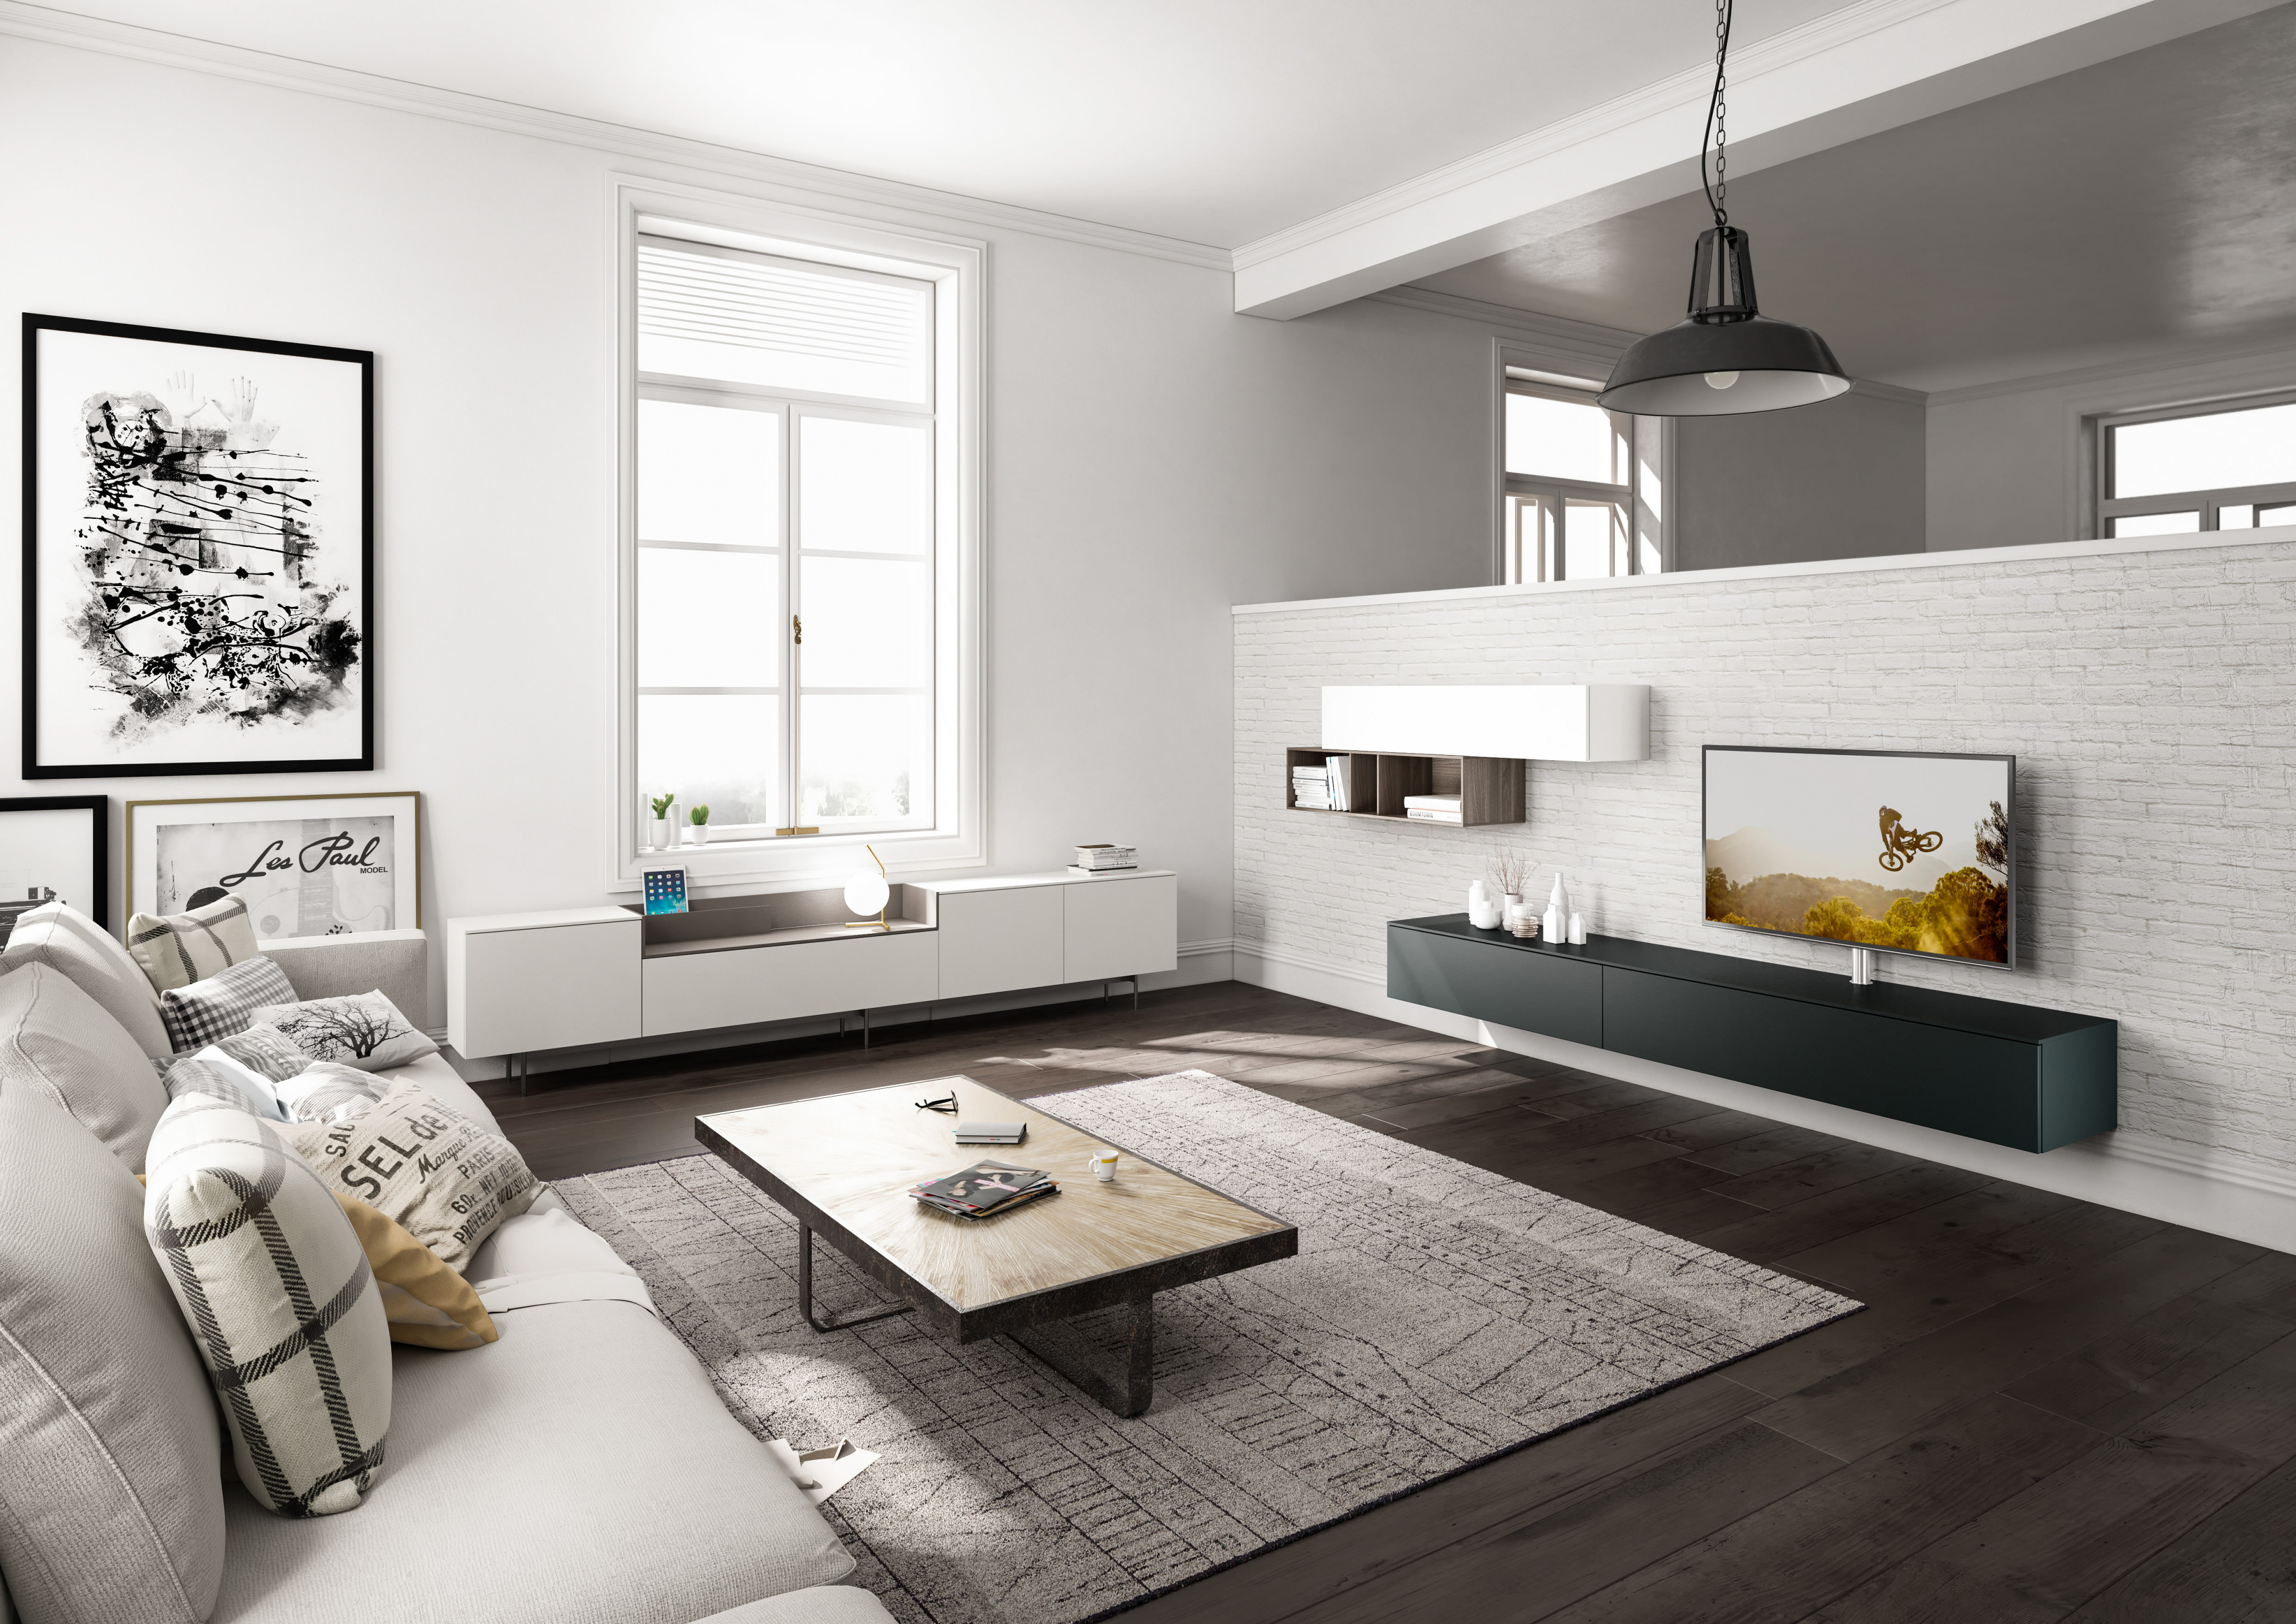 Wohnzimmergestaltung – Die Besten Ideen Tipps  Wohnbeispiele von Wohnzimmer Gestalten Ideen Photo